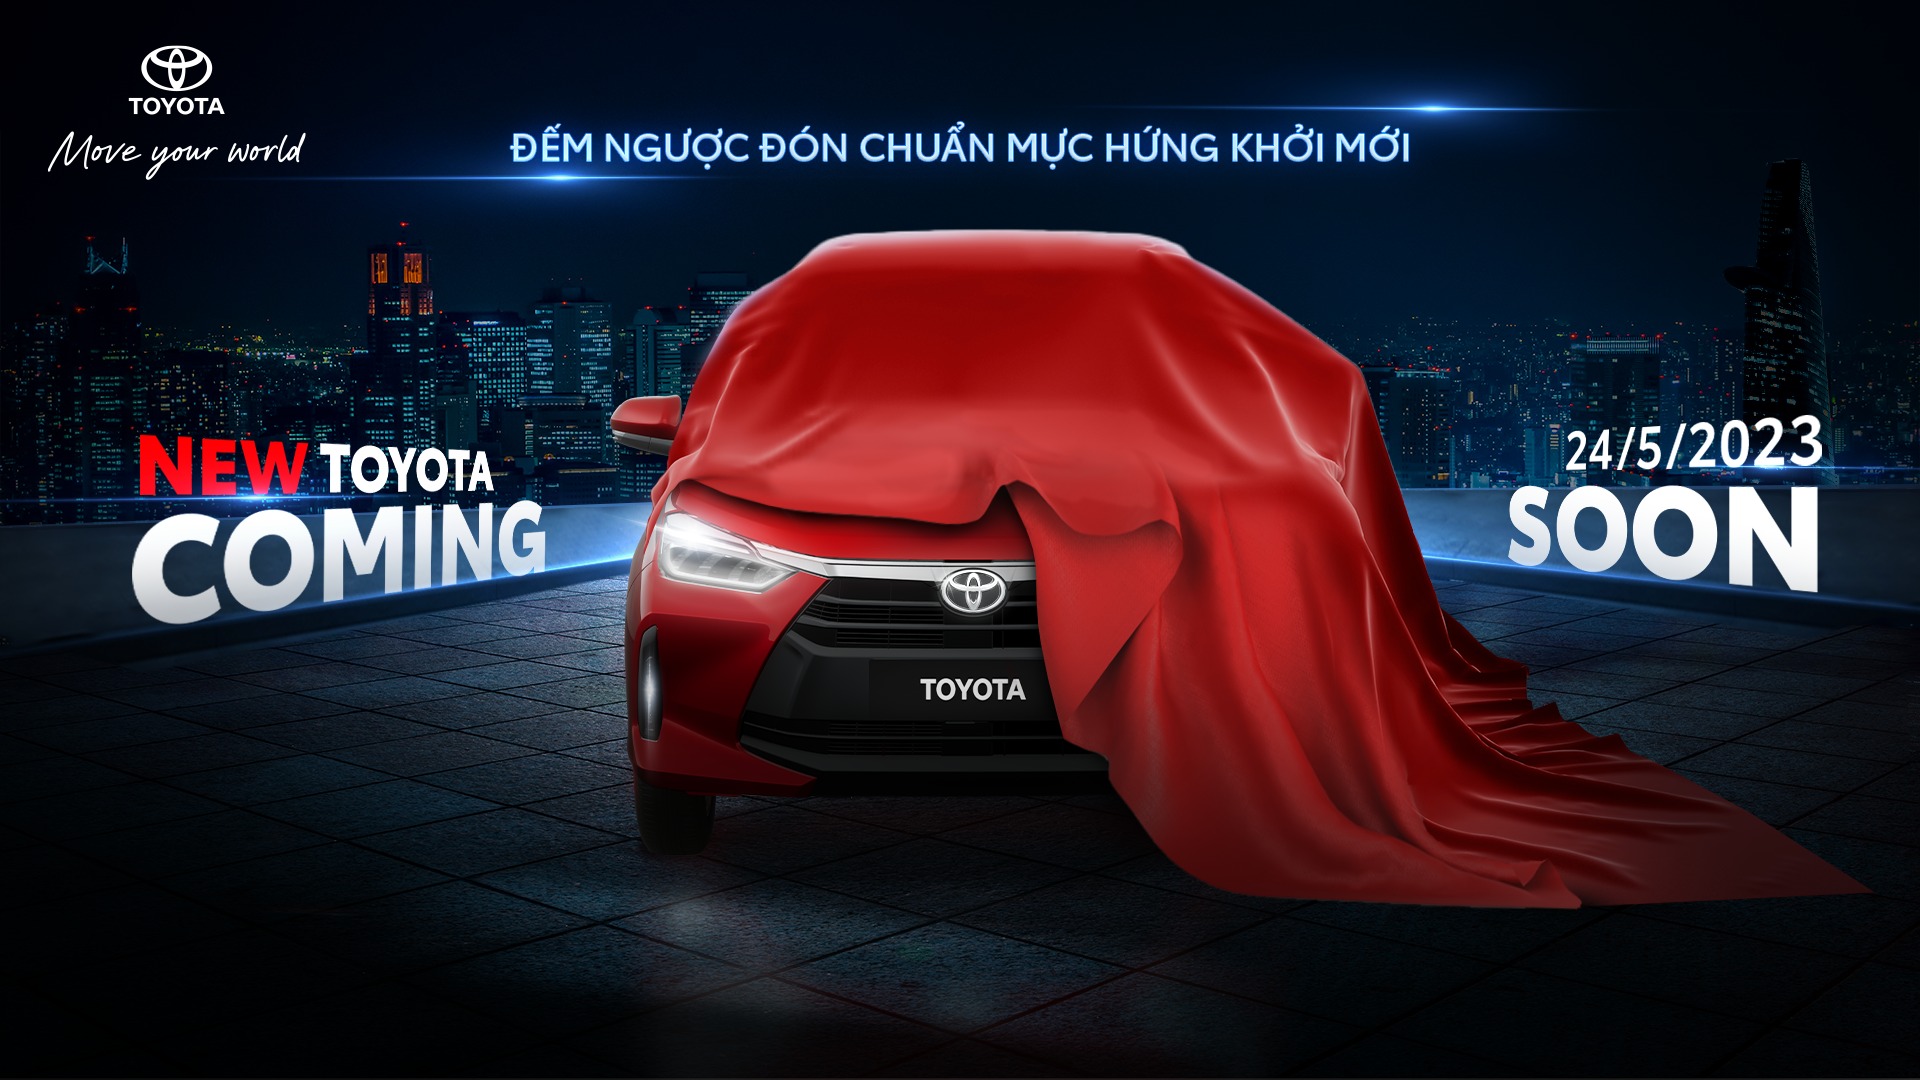 Toyota Wigo hoàn toàn mới sắp ra mắt tại Việt NamI